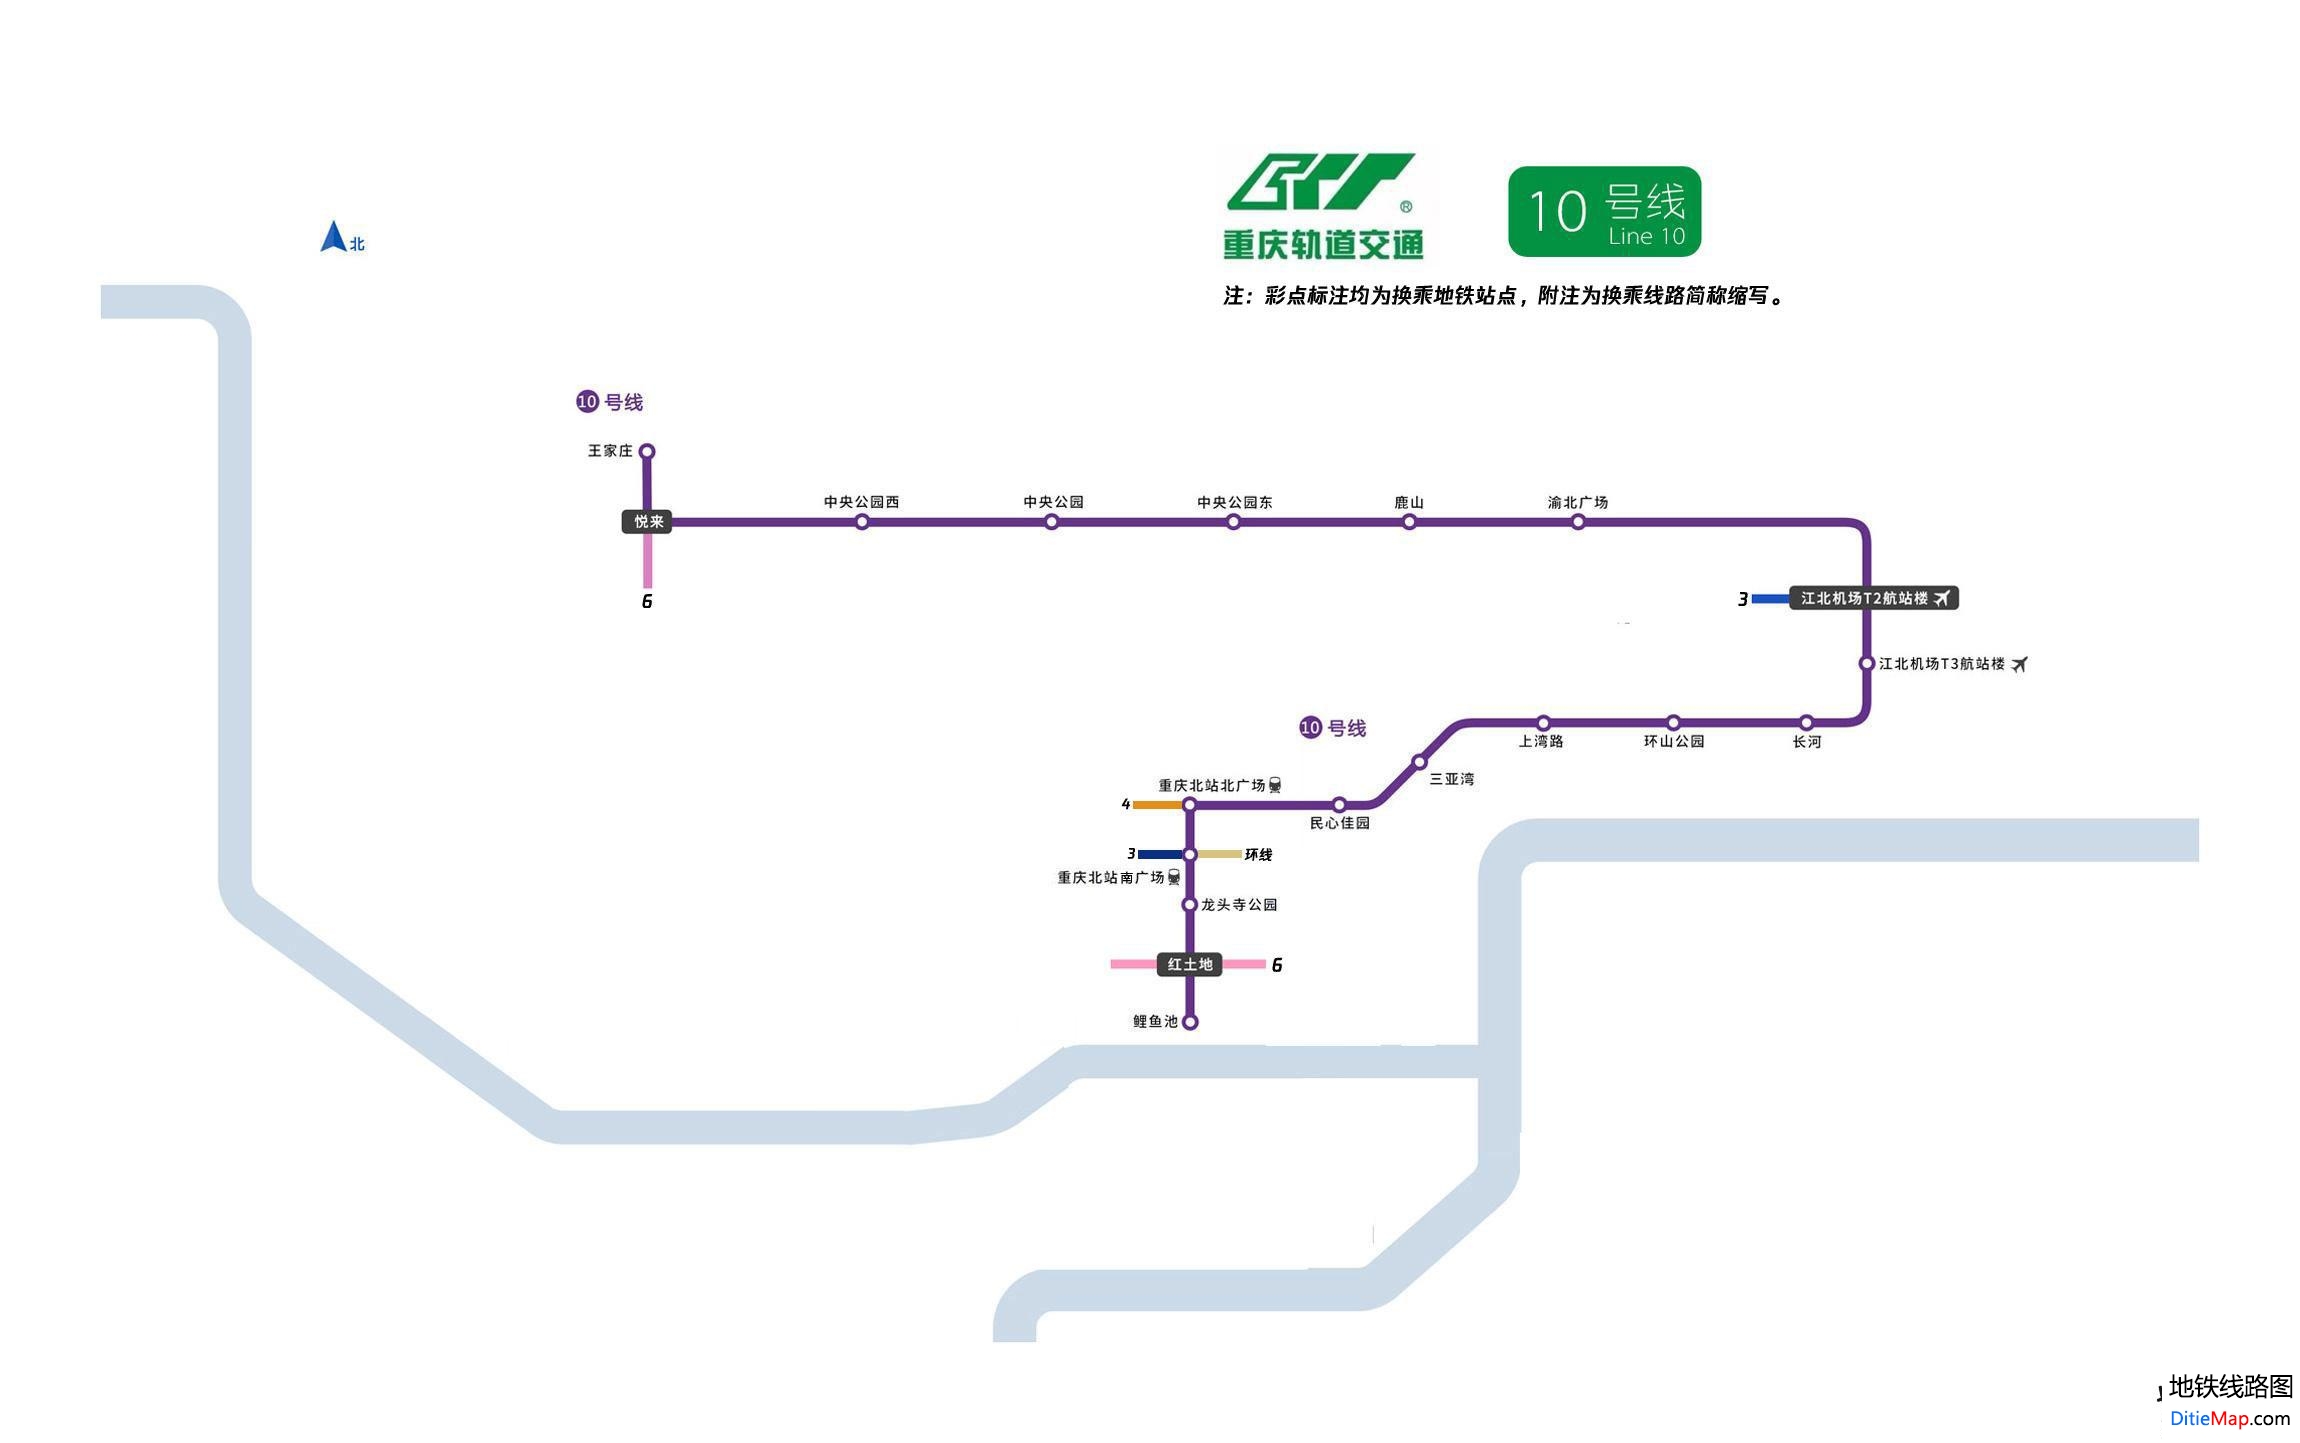 上海地铁10号线线路图_运营时间票价站点_查询下载 - 地铁图